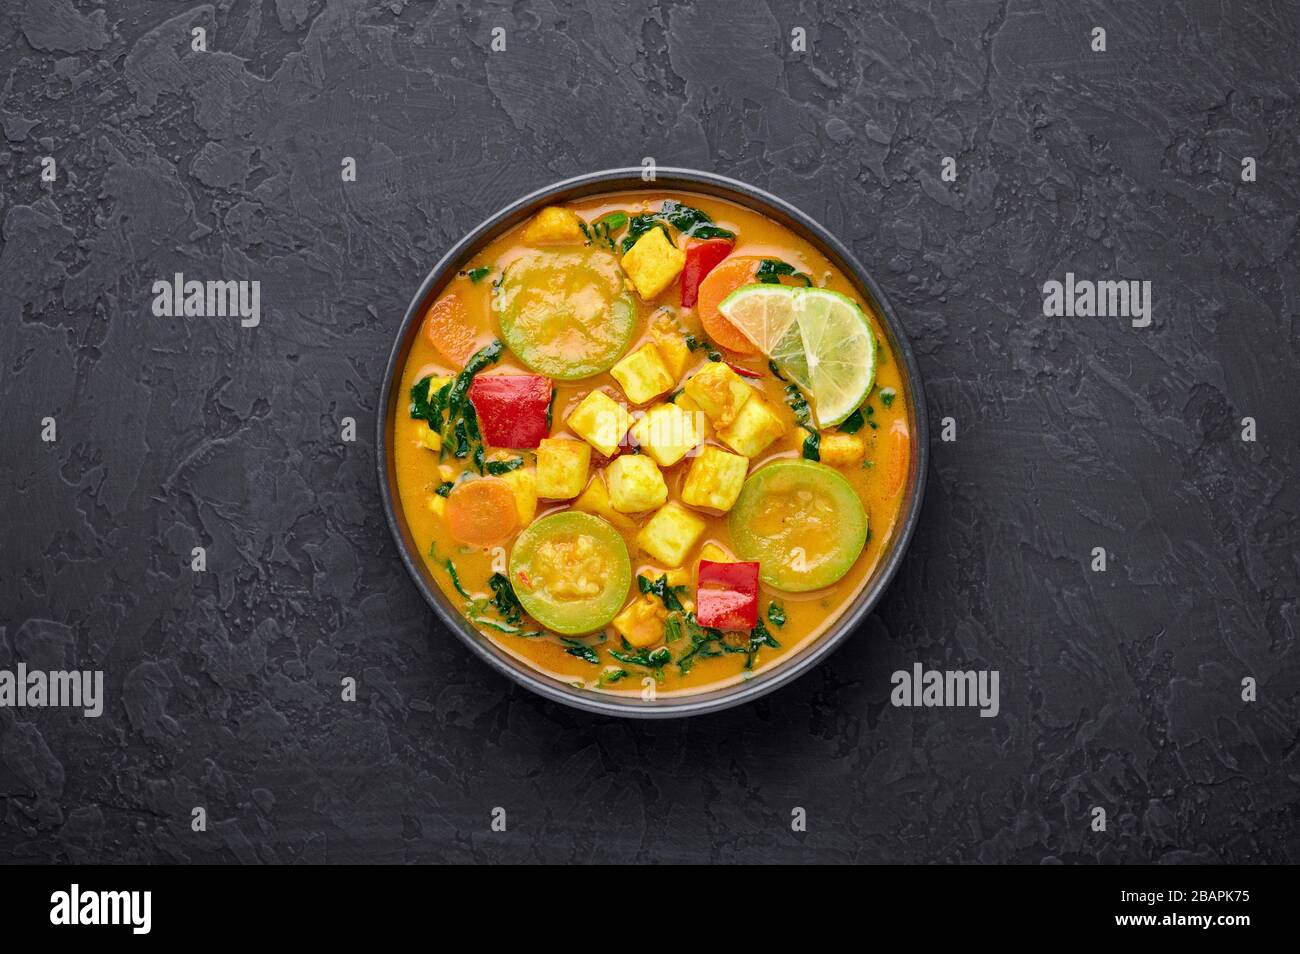 Veau jaune curry thaïlandais avec tofu et légumes dans un bol noir sur fond d'ardoise sombre. Curry thaïlandais végétarien avec tofu, courgettes, poivre, épinards, voiture Banque D'Images